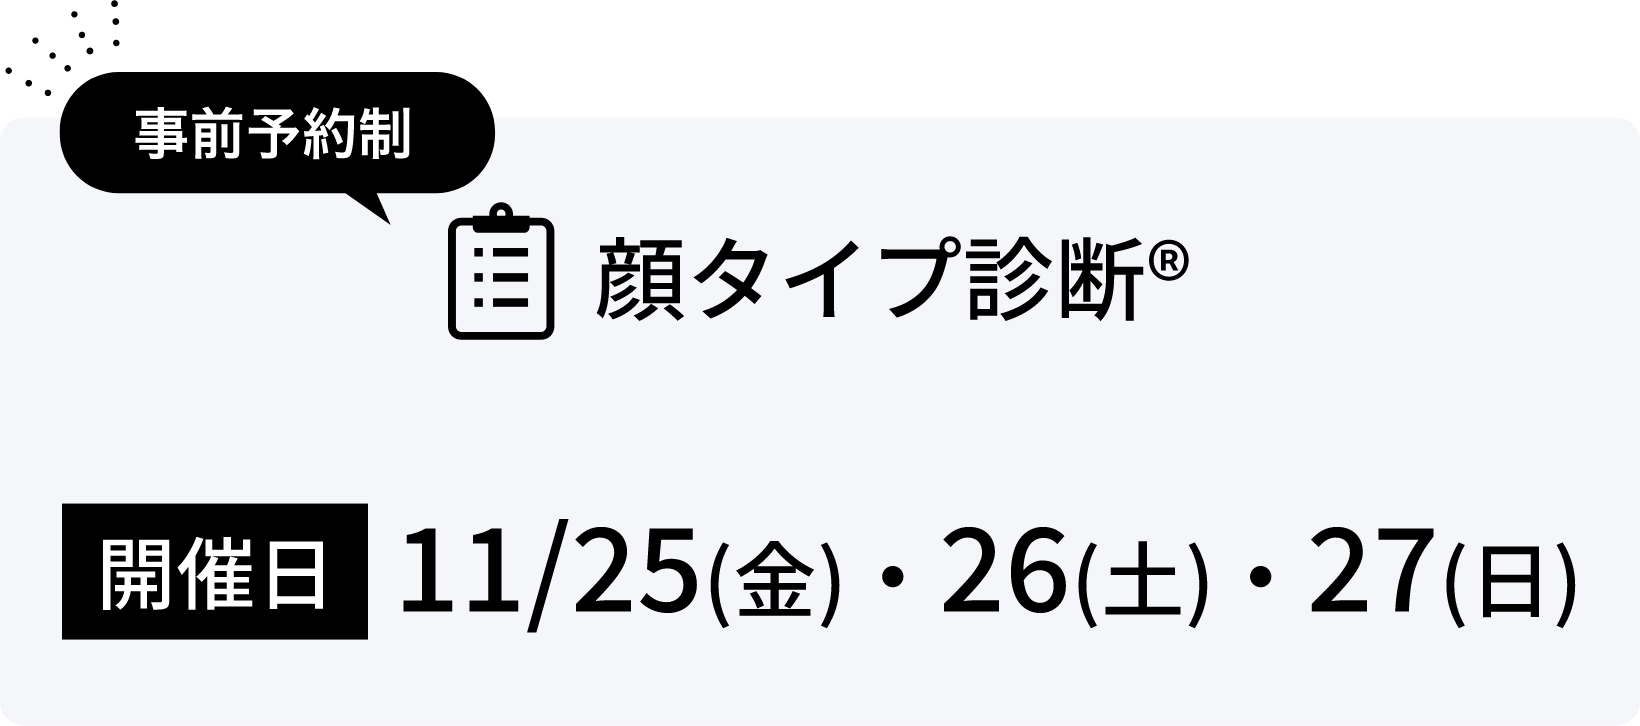 顔タイプ診断® 開催日 11/25(金)・26(土)・27(日)